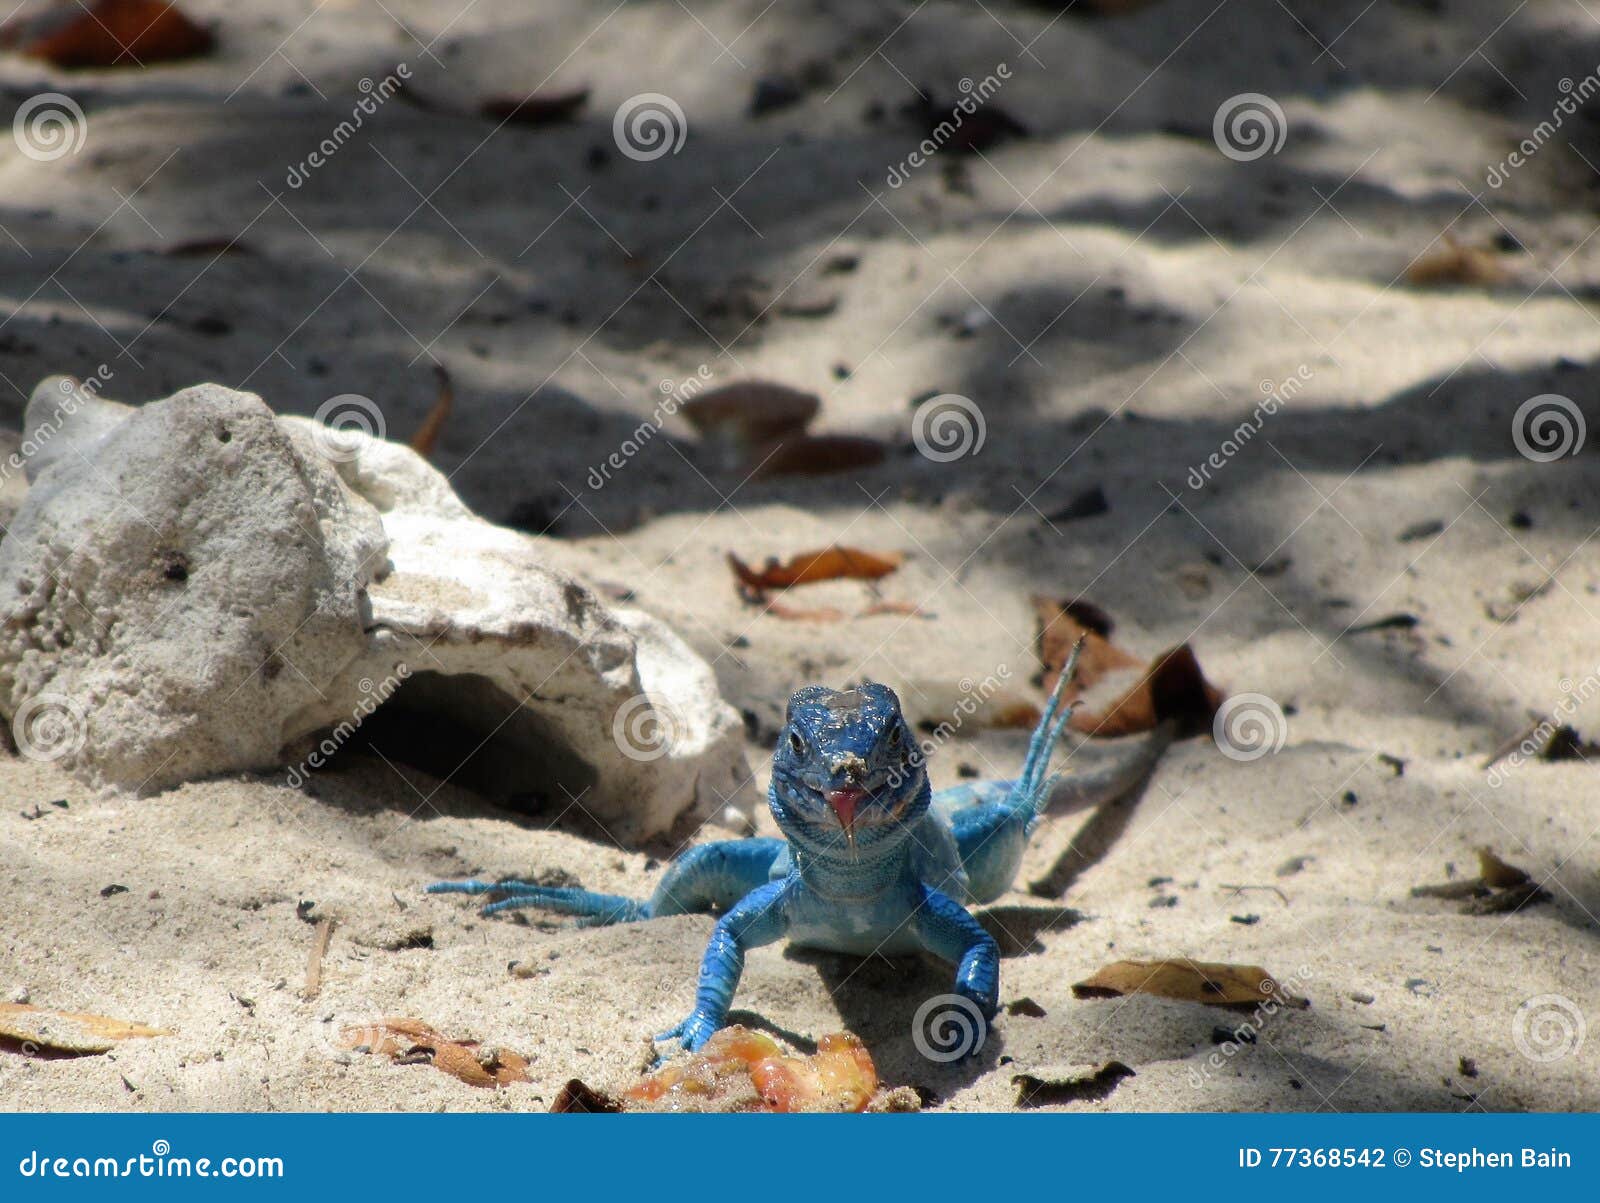 lizard on the beach